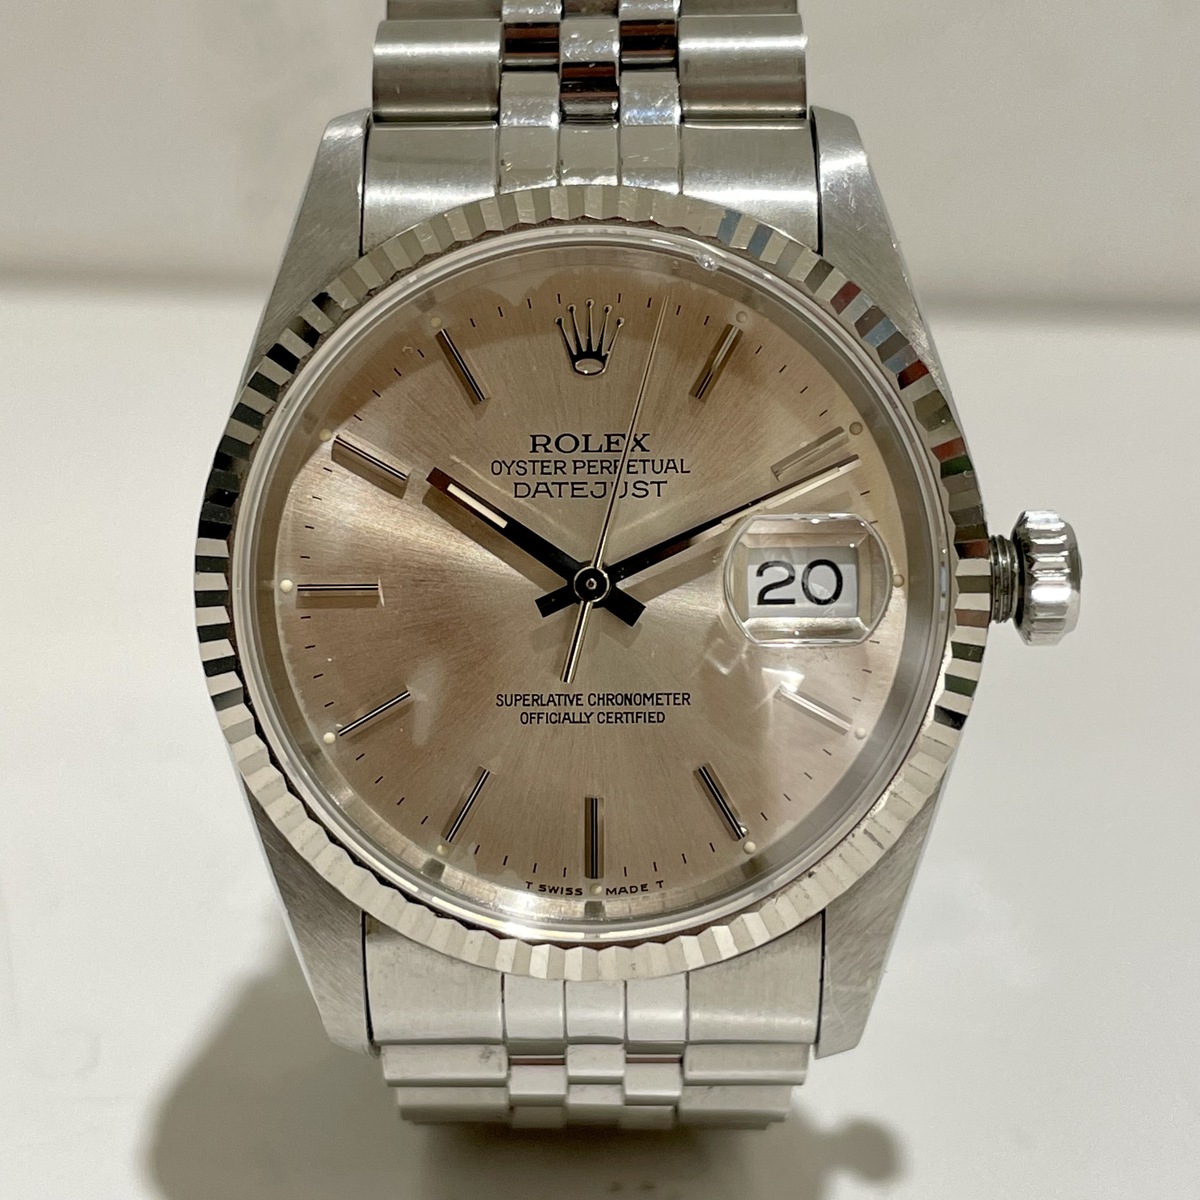 ロレックスのSS×WG 16234 オイスターパーペチュアル X番 自動巻 腕時計の買取実績です。